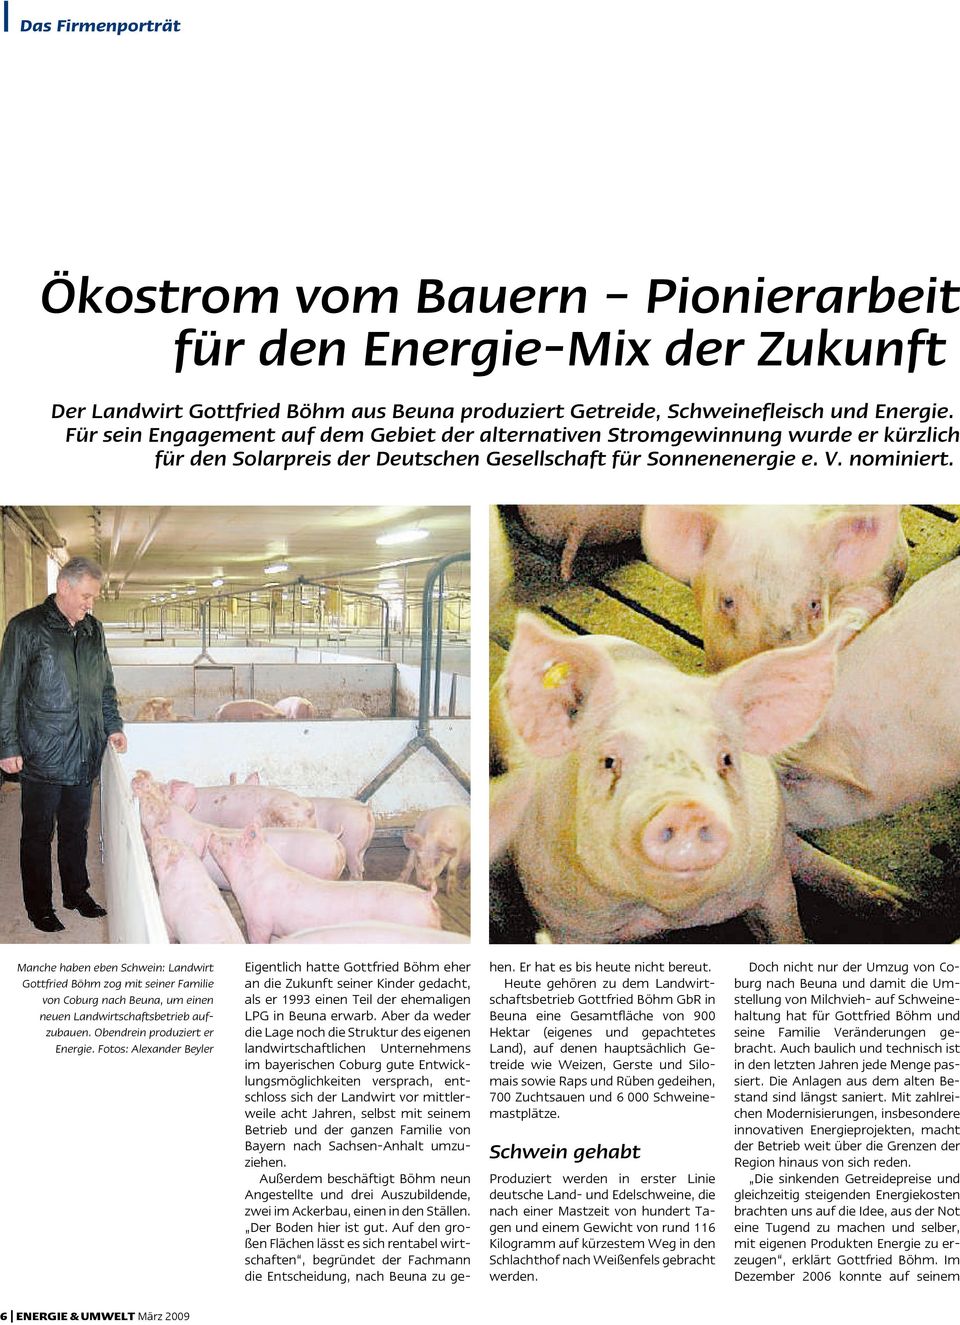 Manche haben eben Schwein: Landwirt Gottfried Böhm zog mit seiner Familie von Coburg nach Beuna, um einen neuen Landwirtschaftsbetrieb aufzubauen. Obendrein produziert er Energie.